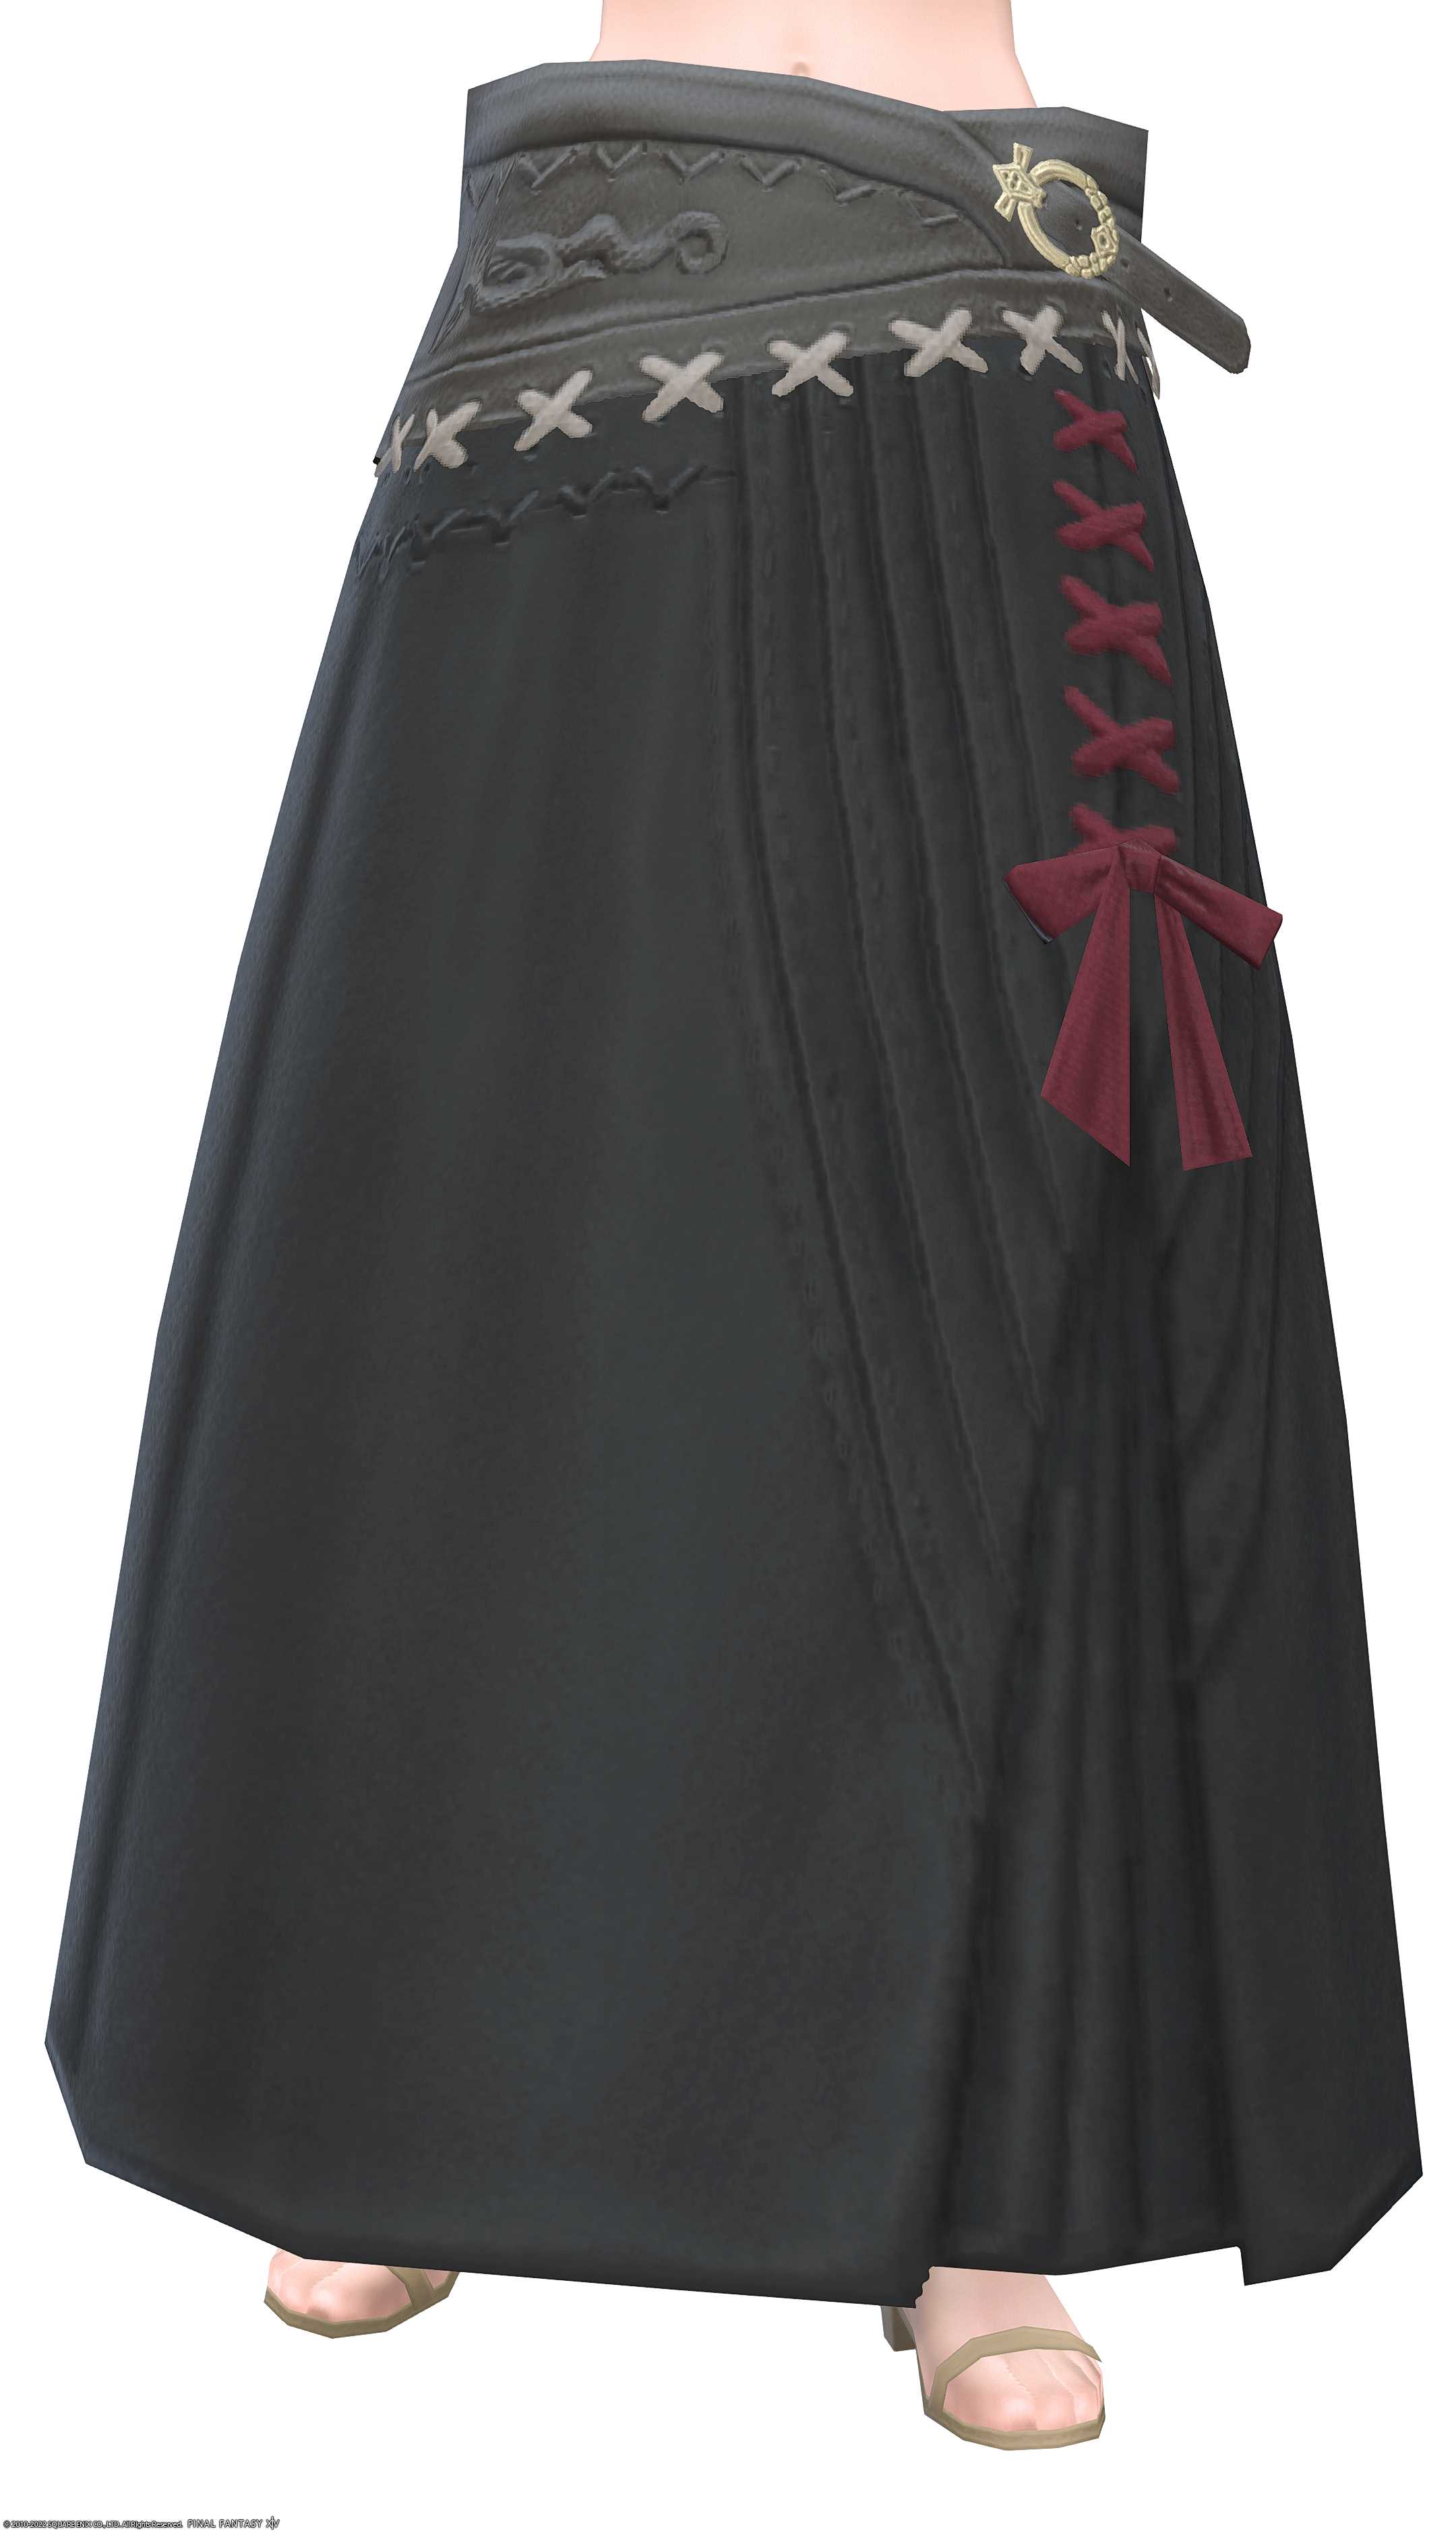 ドラヴァニアン・キャスターロングキルト | FF14ミラプリ - Dravanian Longkilt of Casting - スカート